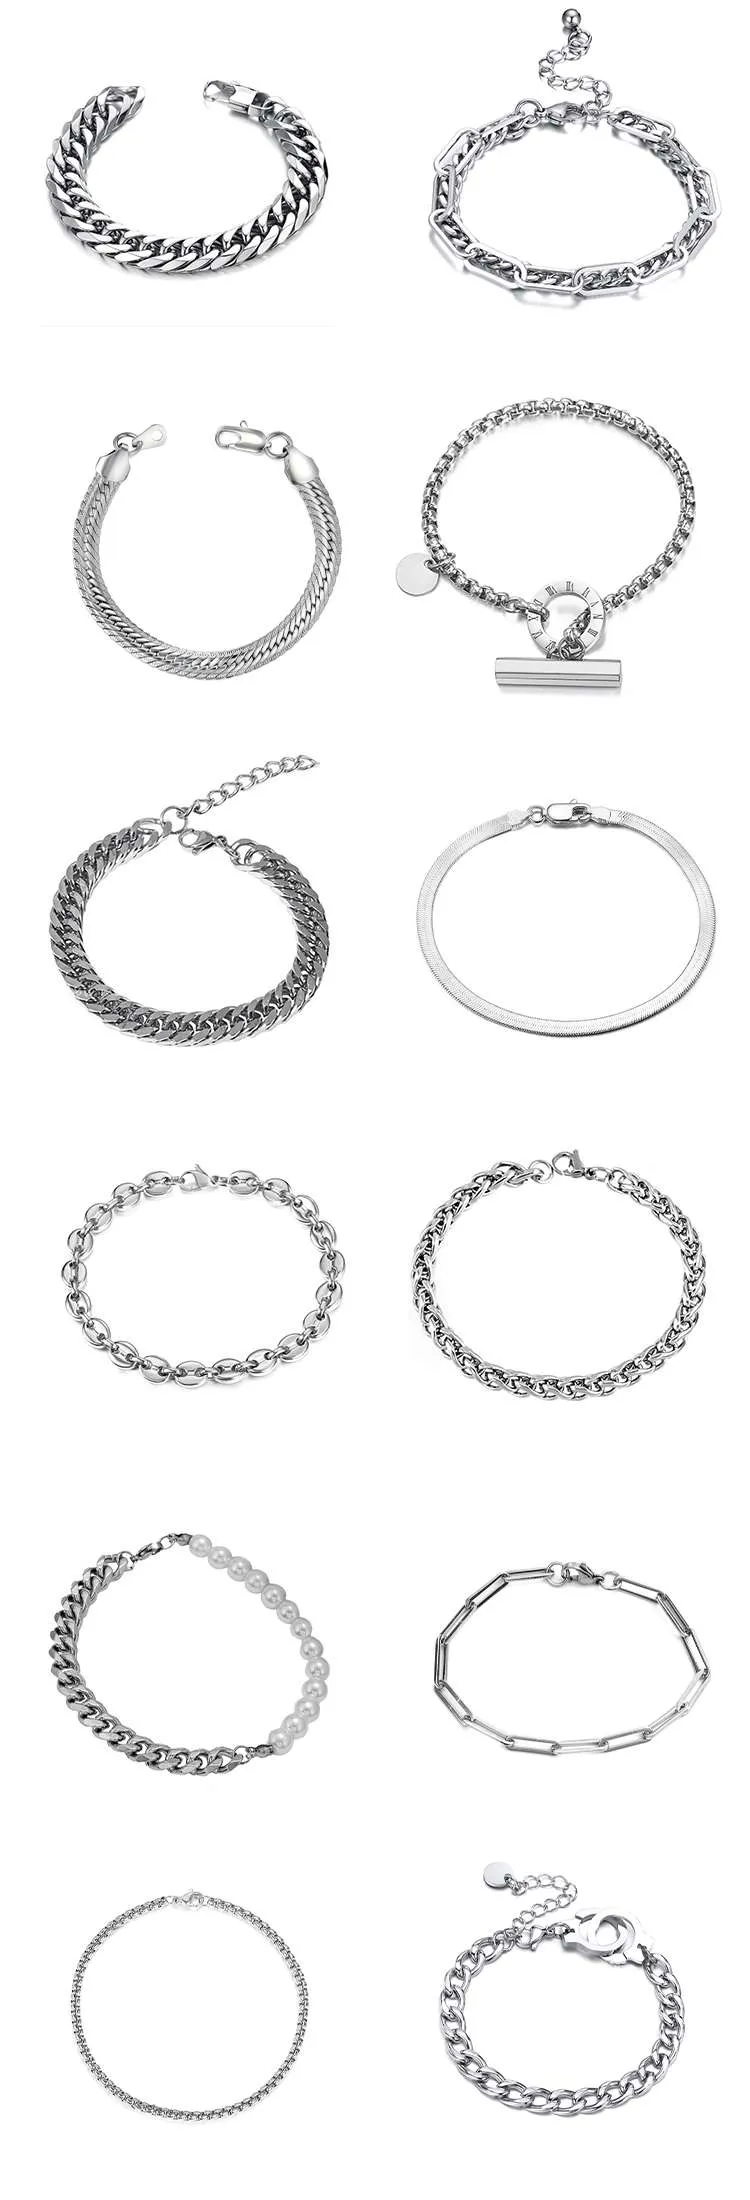 Men's stainless steel bracelets